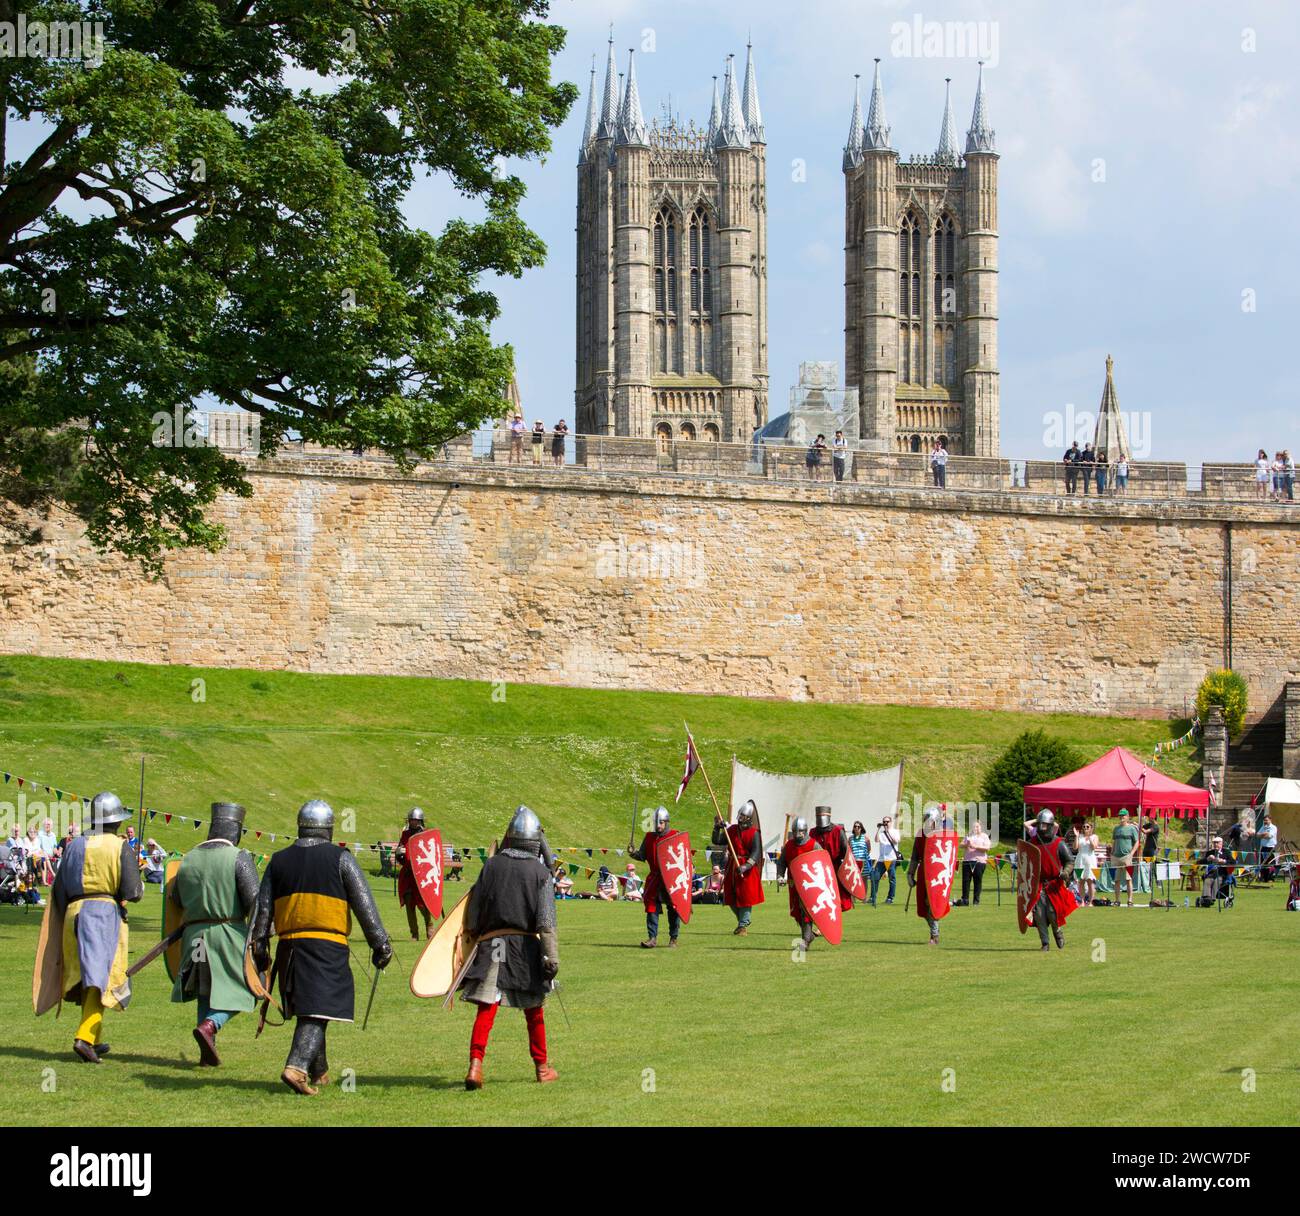 Lincoln, Lincolnshire, Angleterre. Guerriers costumés prenant part à une reconstitution de bataille médiévale sur les pelouses du château de Lincoln. Banque D'Images